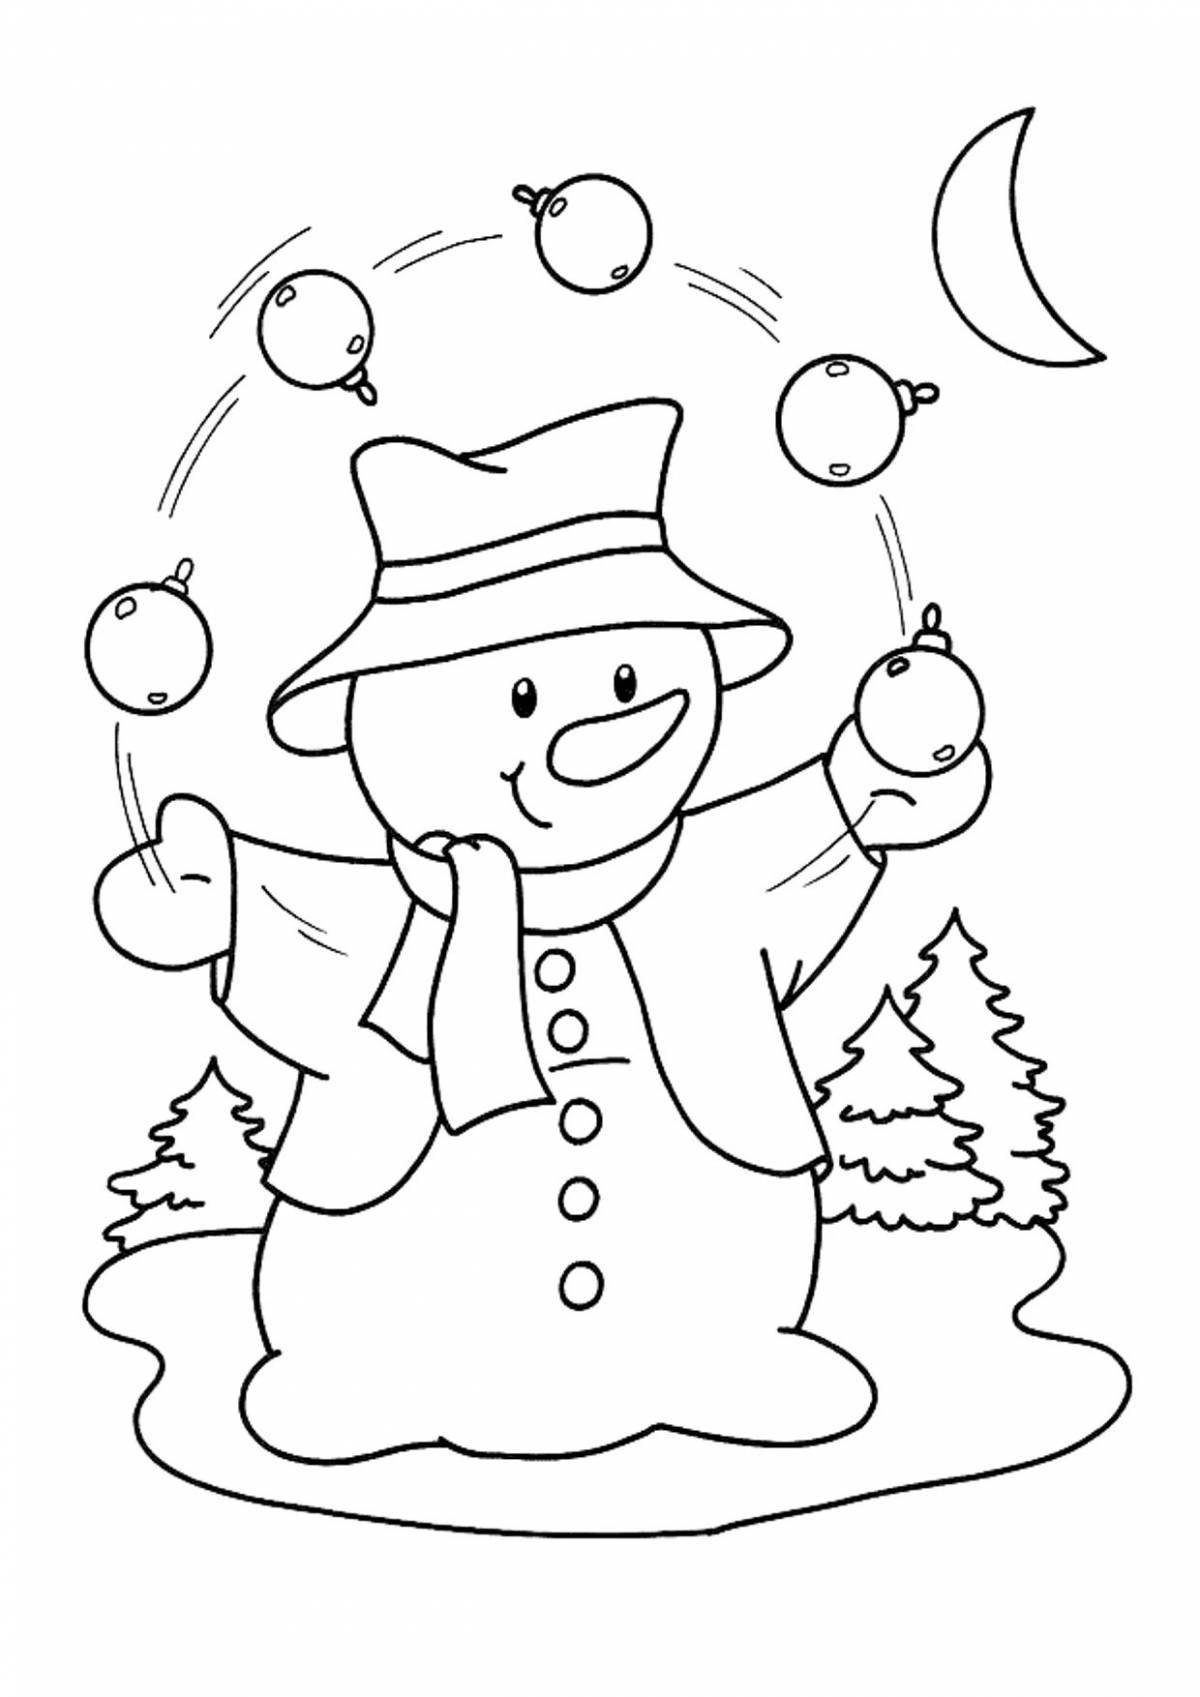 Радостная раскраска смешной снеговик для детей